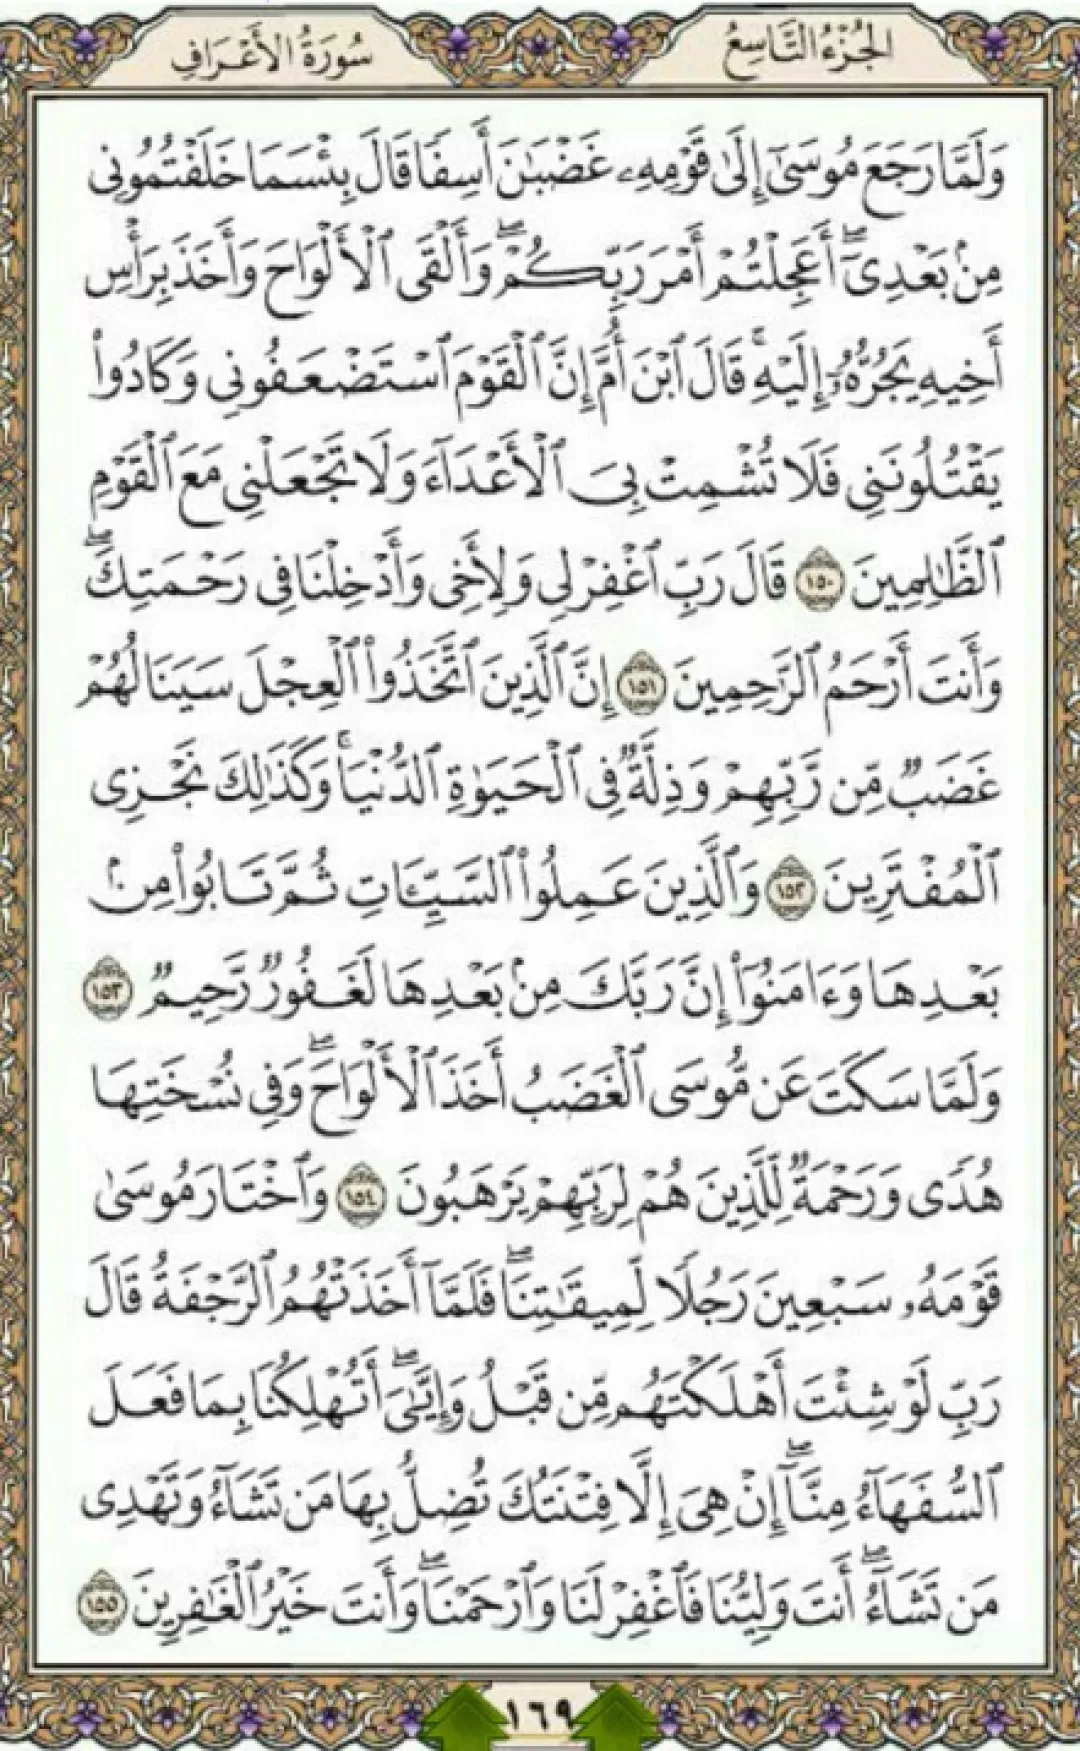 روزانه یک صفحه با شمیم قرآن